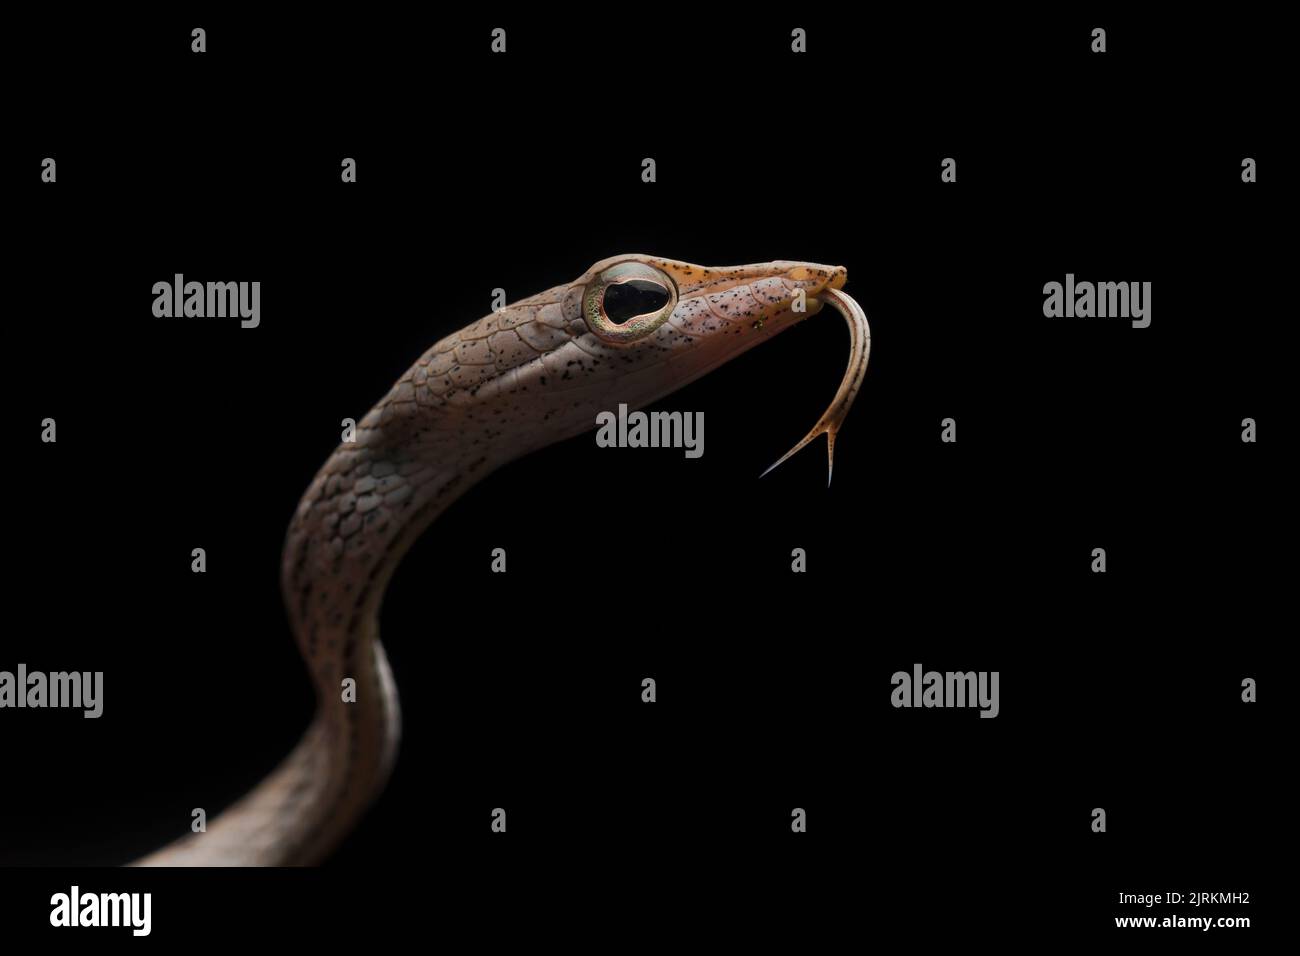 Ahaetulla fasciolata: Serpiente COPE de Ecuador Foto de stock